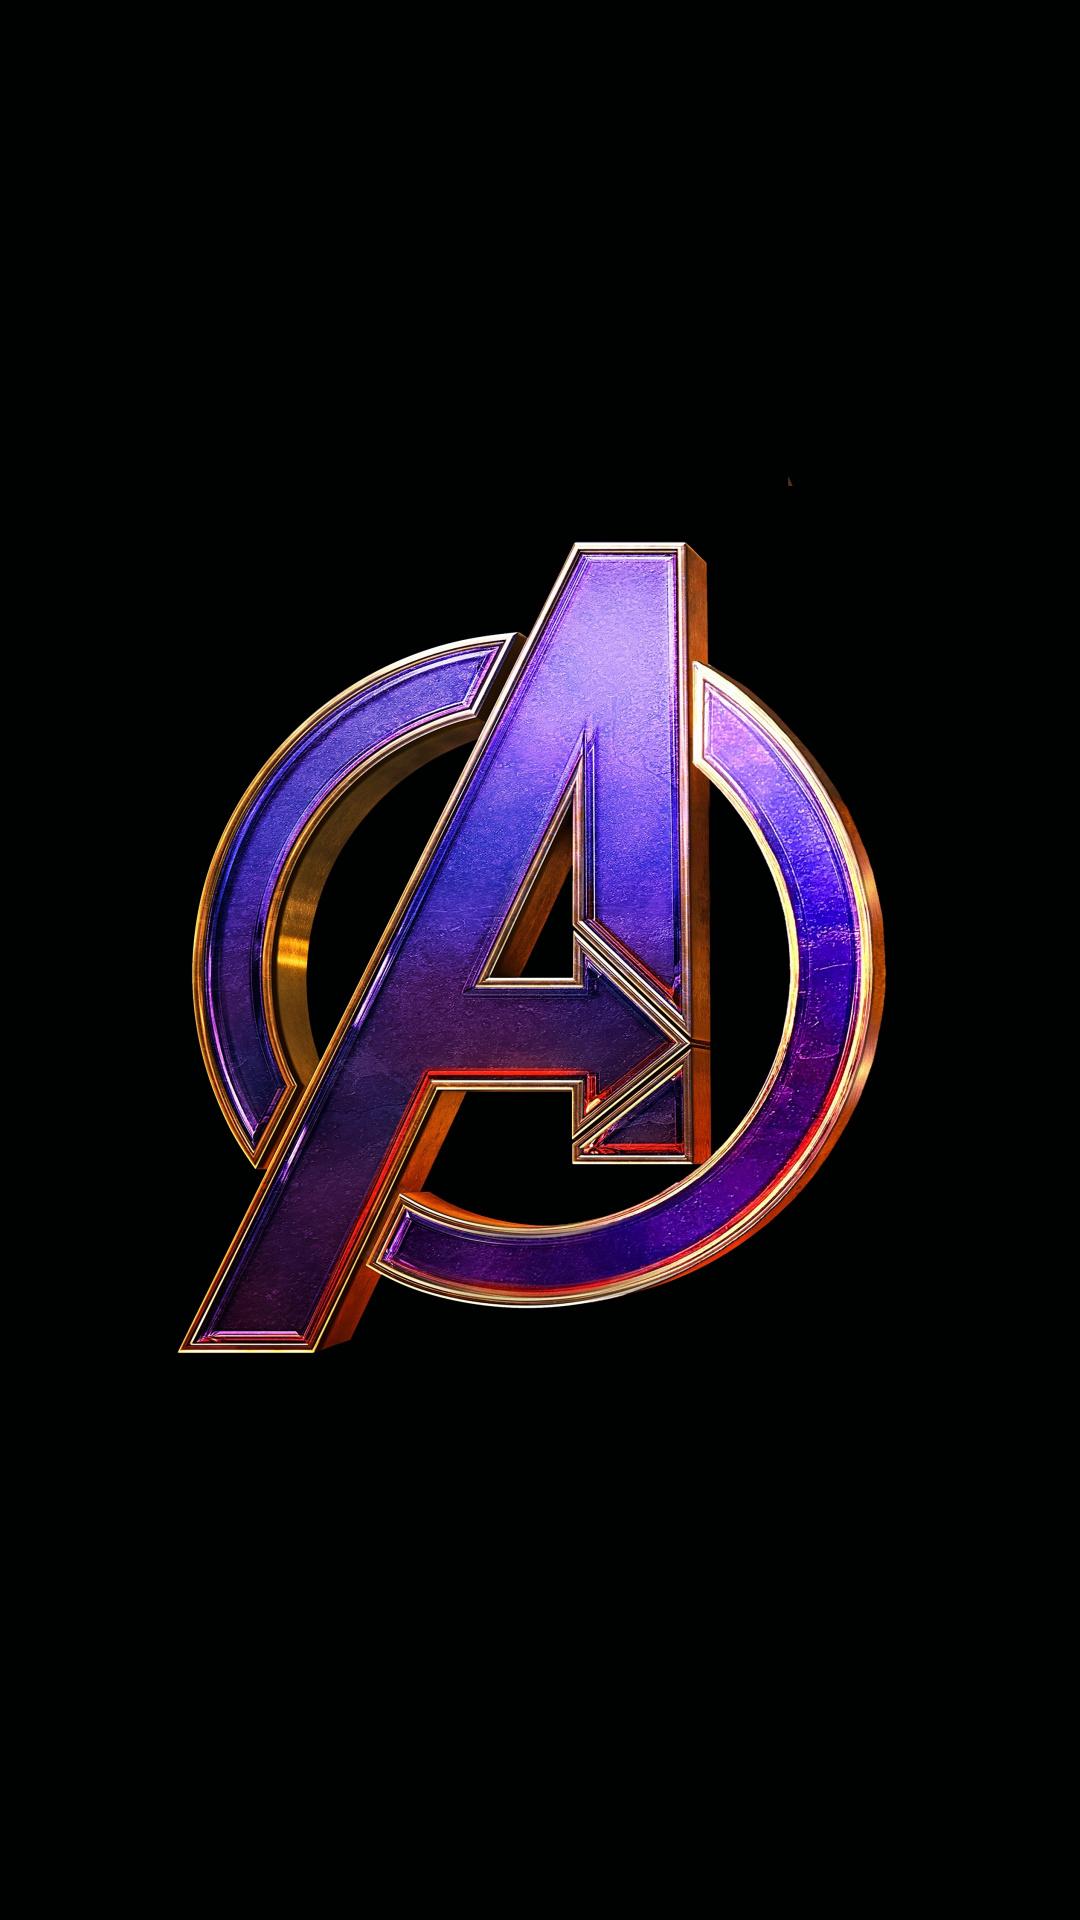 Download 1080x1920 wallpaper avengers: endgame, movie, logo